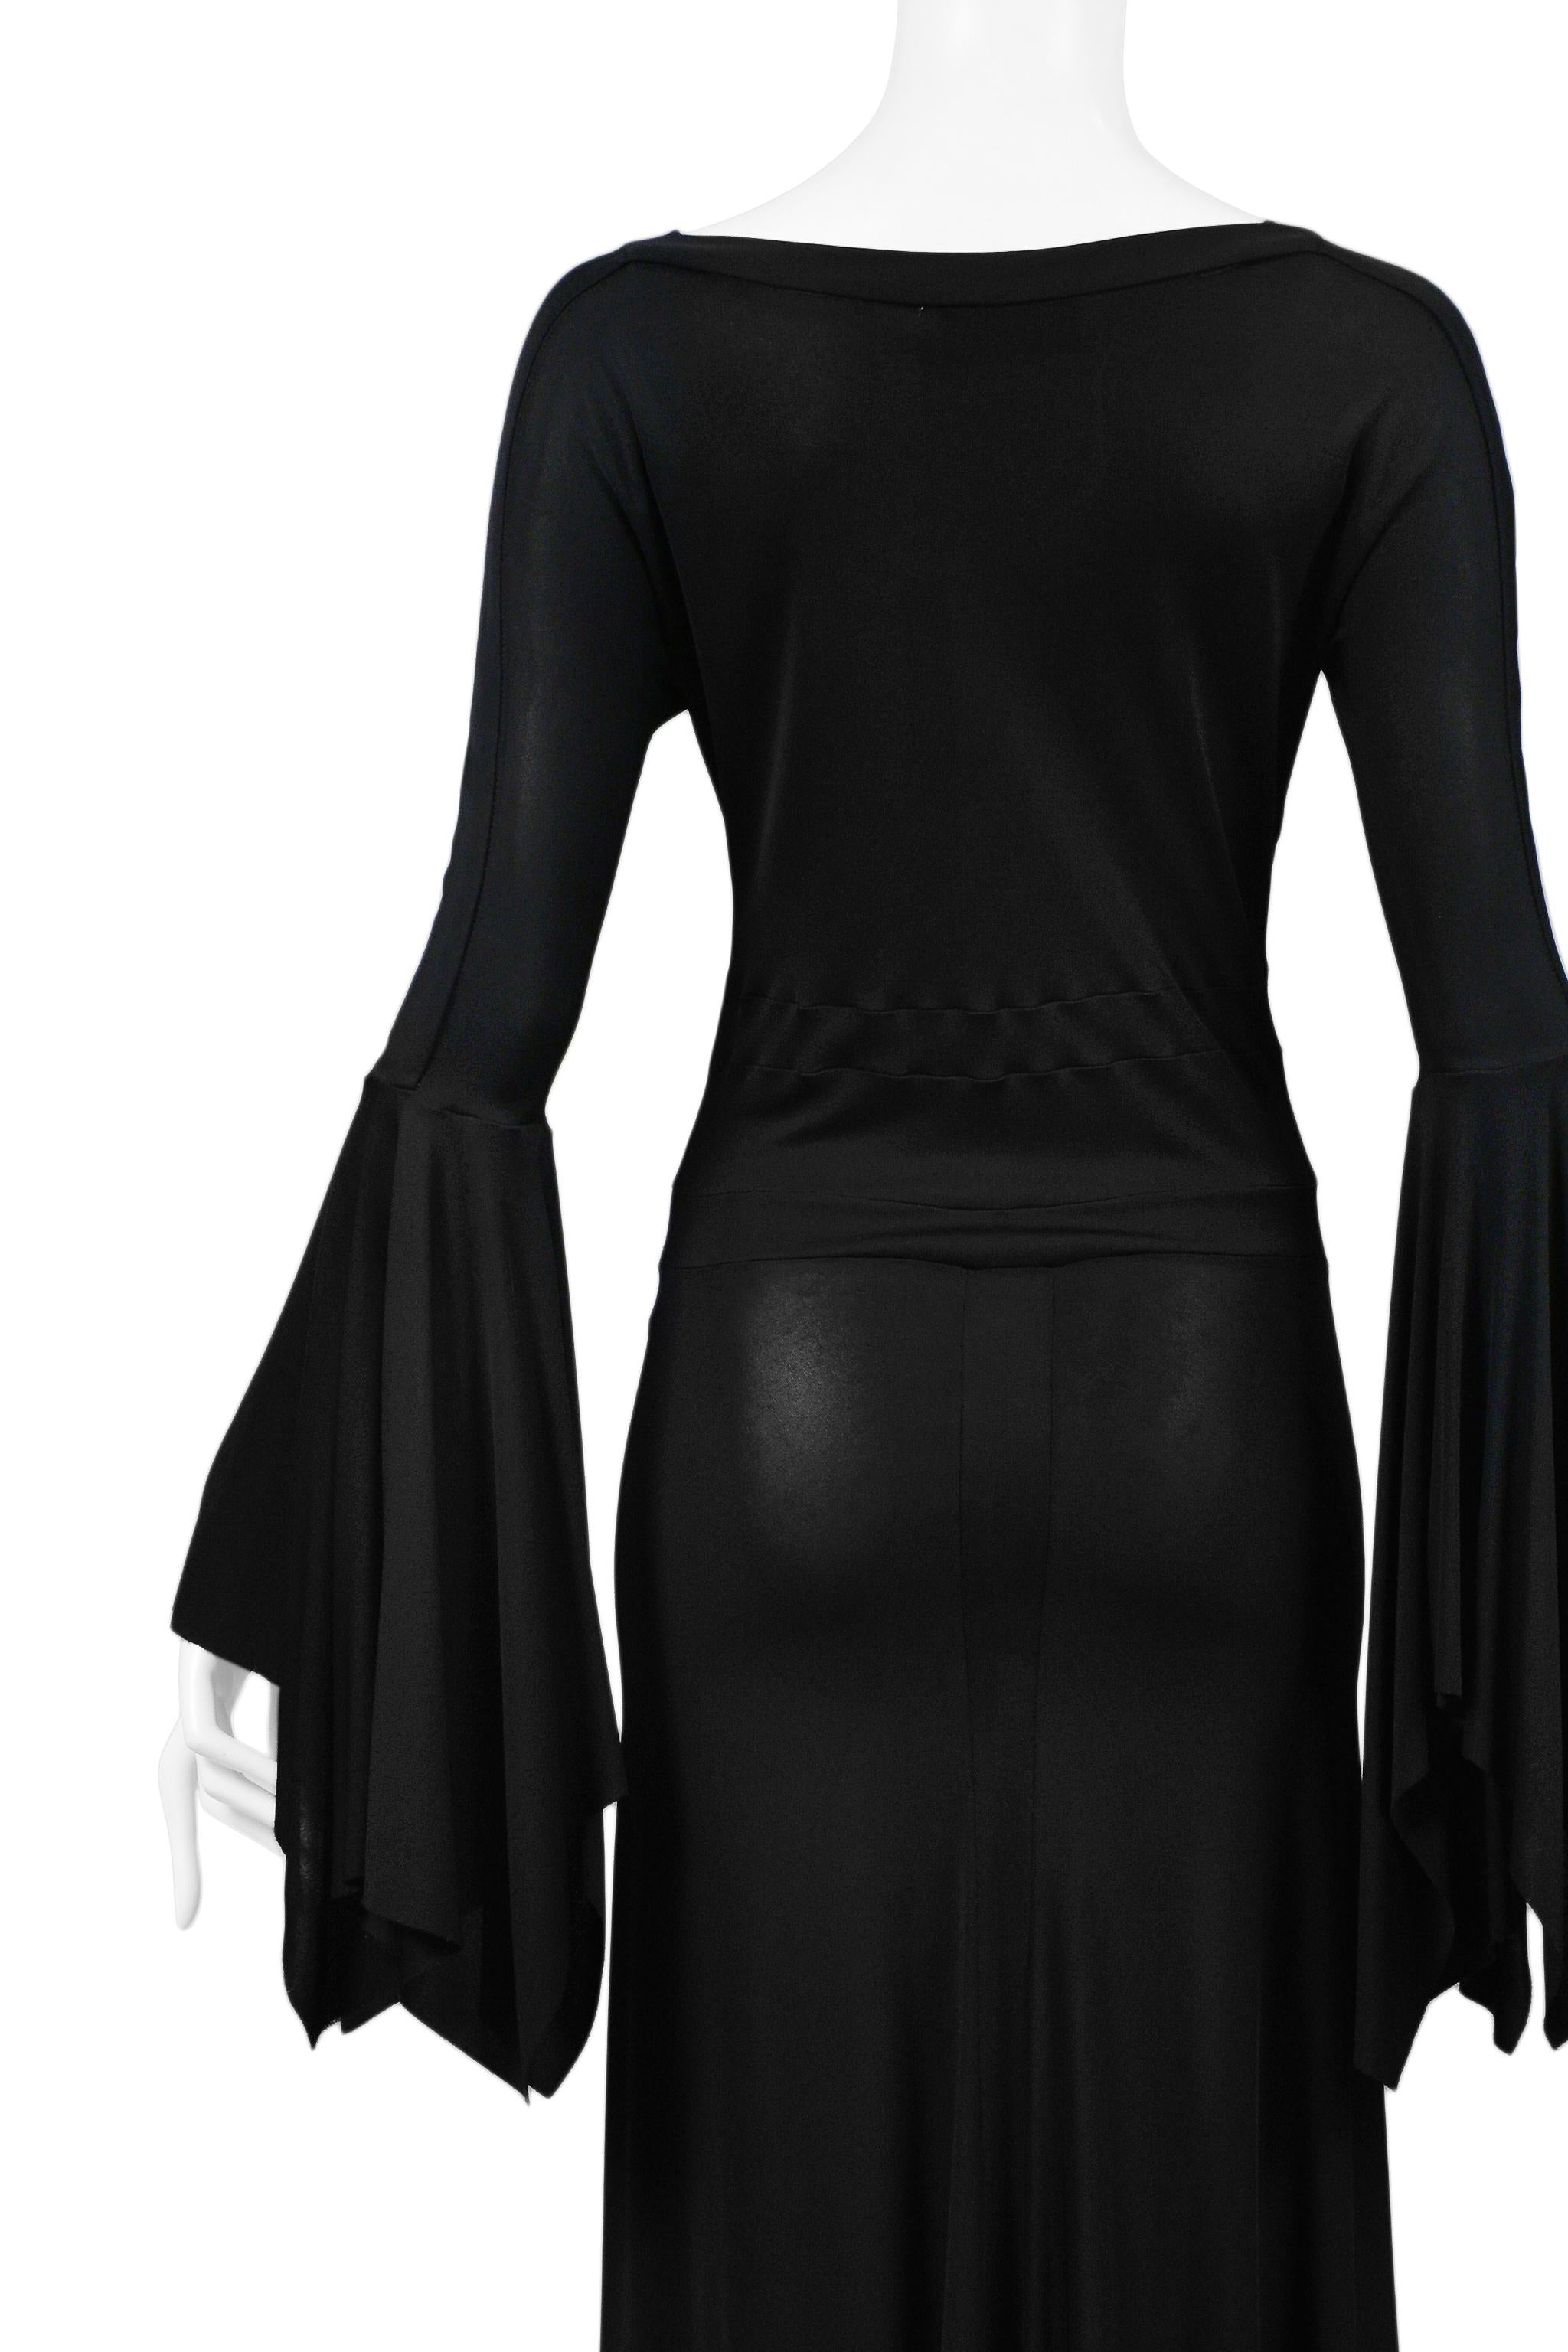 Women's Vintage Tom Ford for Yves Saint Laurent Black Bell Sleeve Dress  2003 Runway